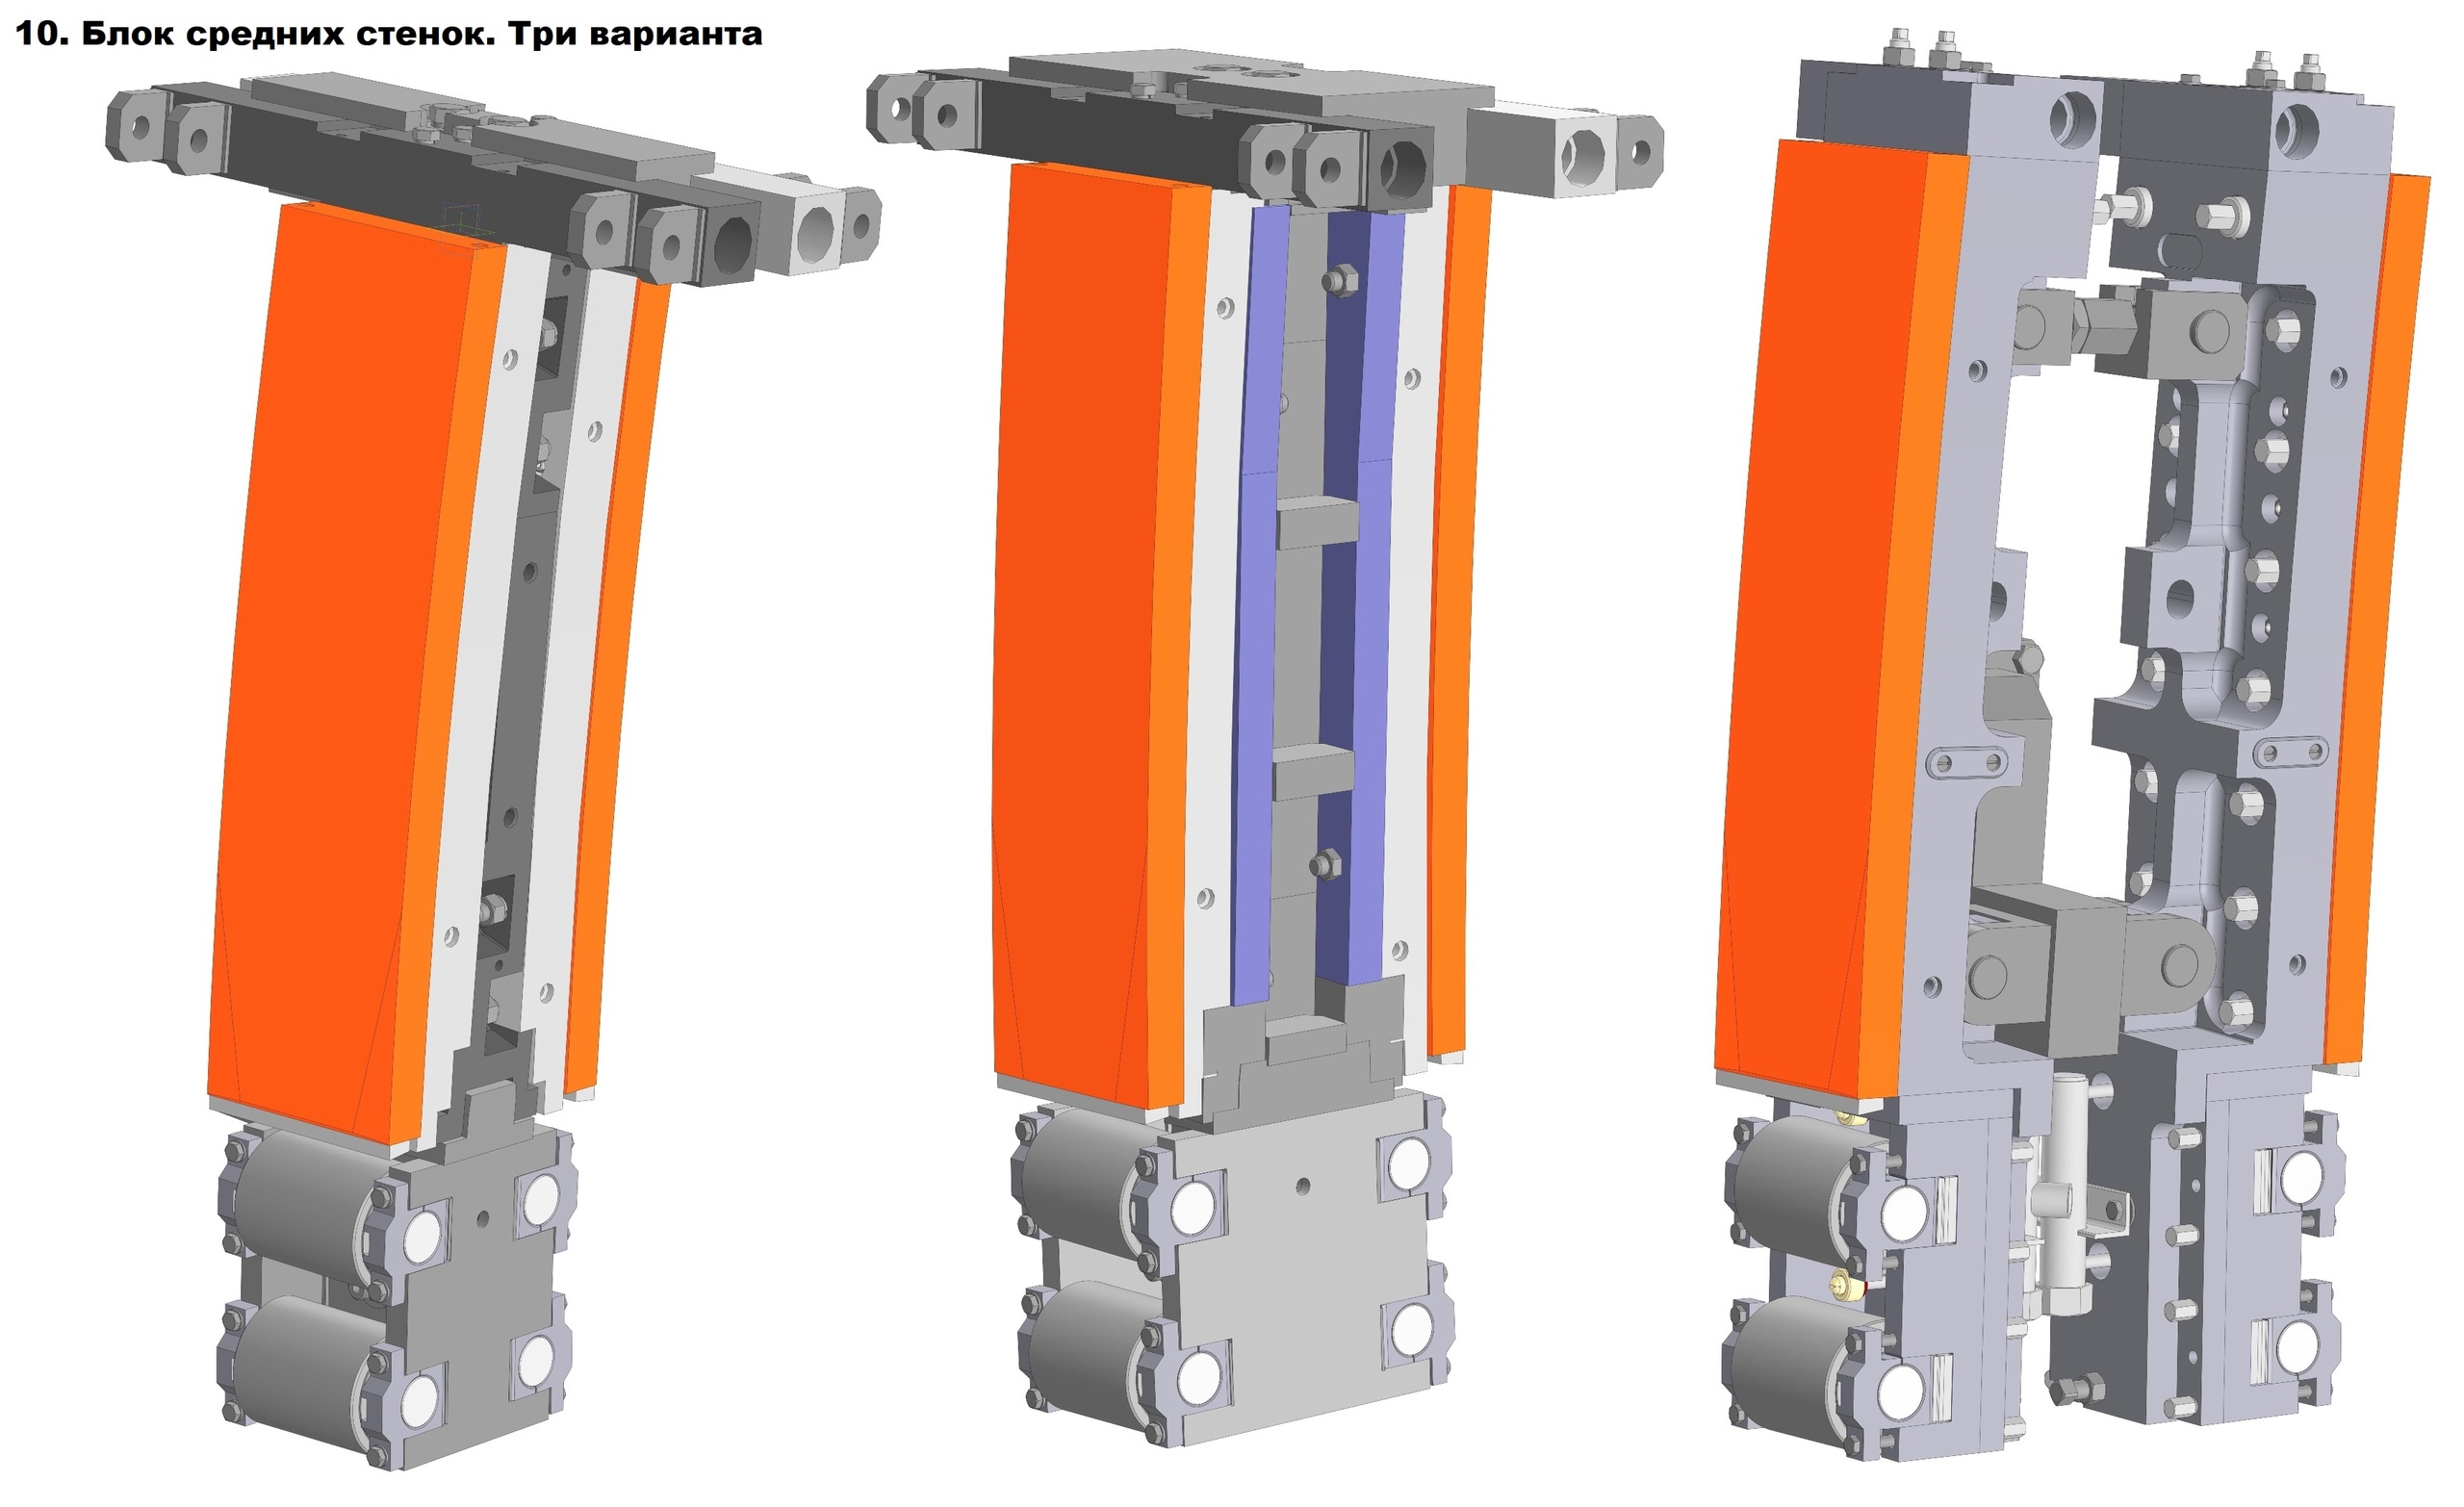 Конструктора ЦНИИчермет получили спецприз за 3D-моделирование кристаллизатора МНЛЗ